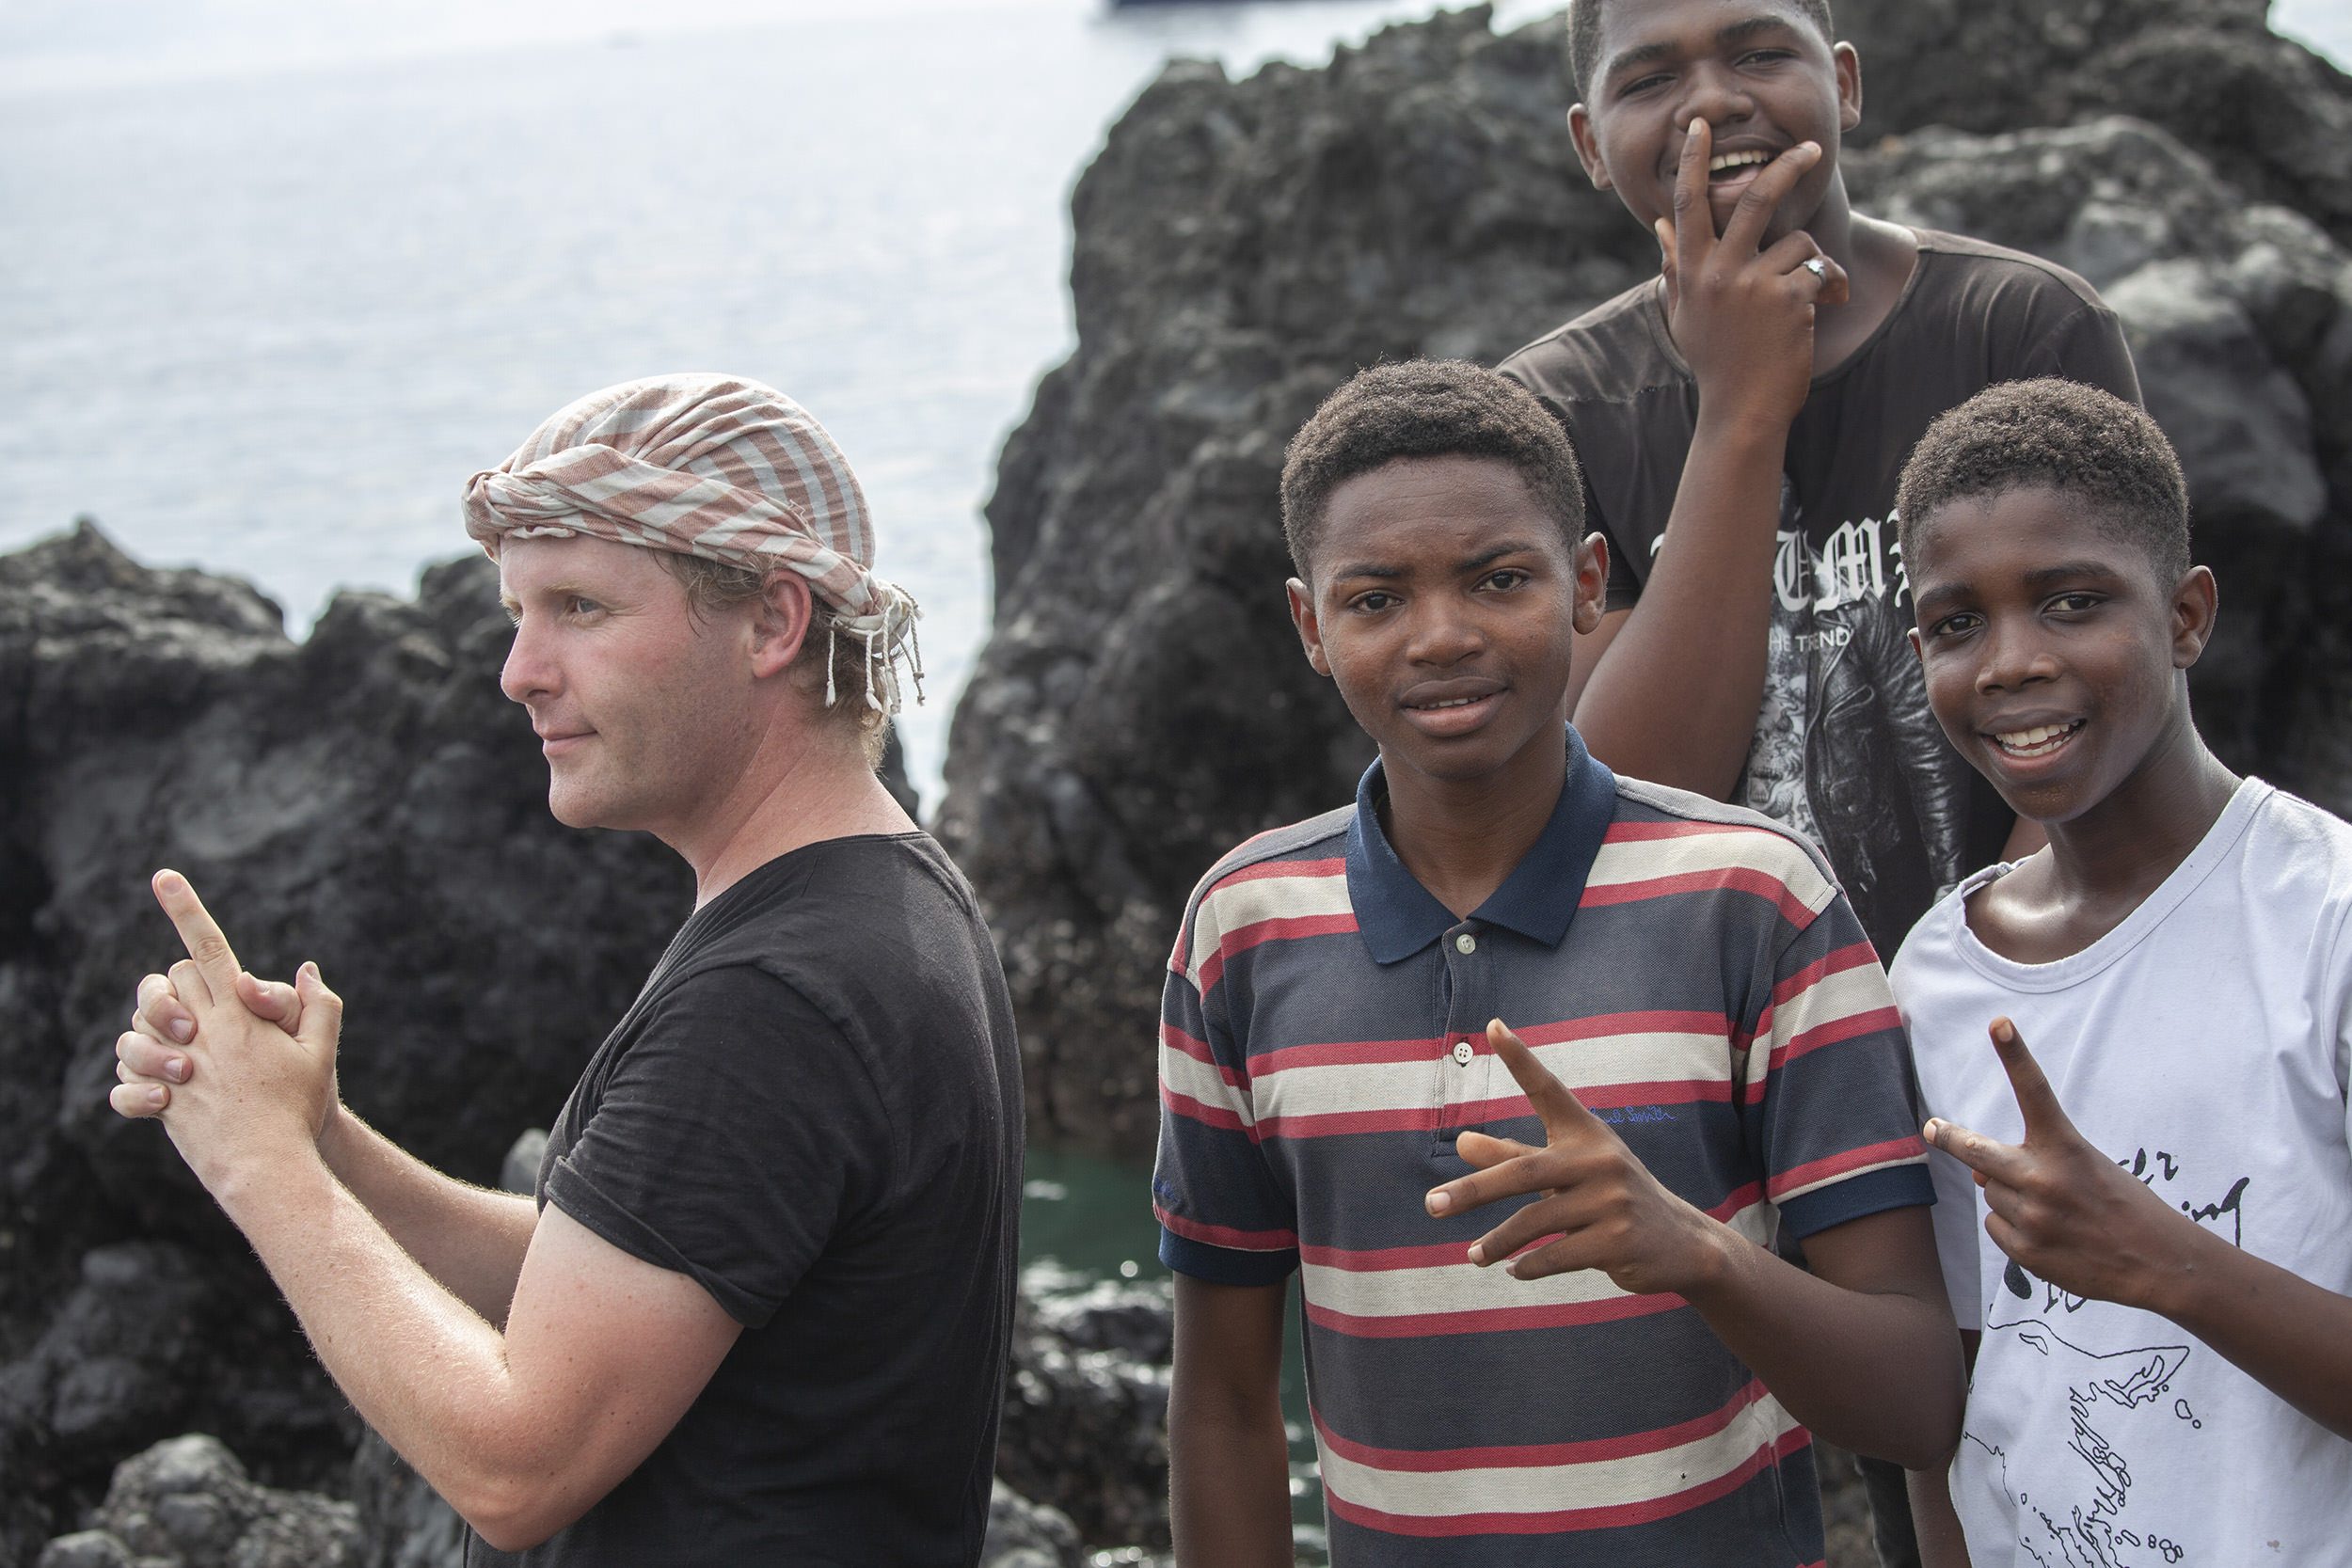 Ben posing with local Comorian boys in Moroni Comoros